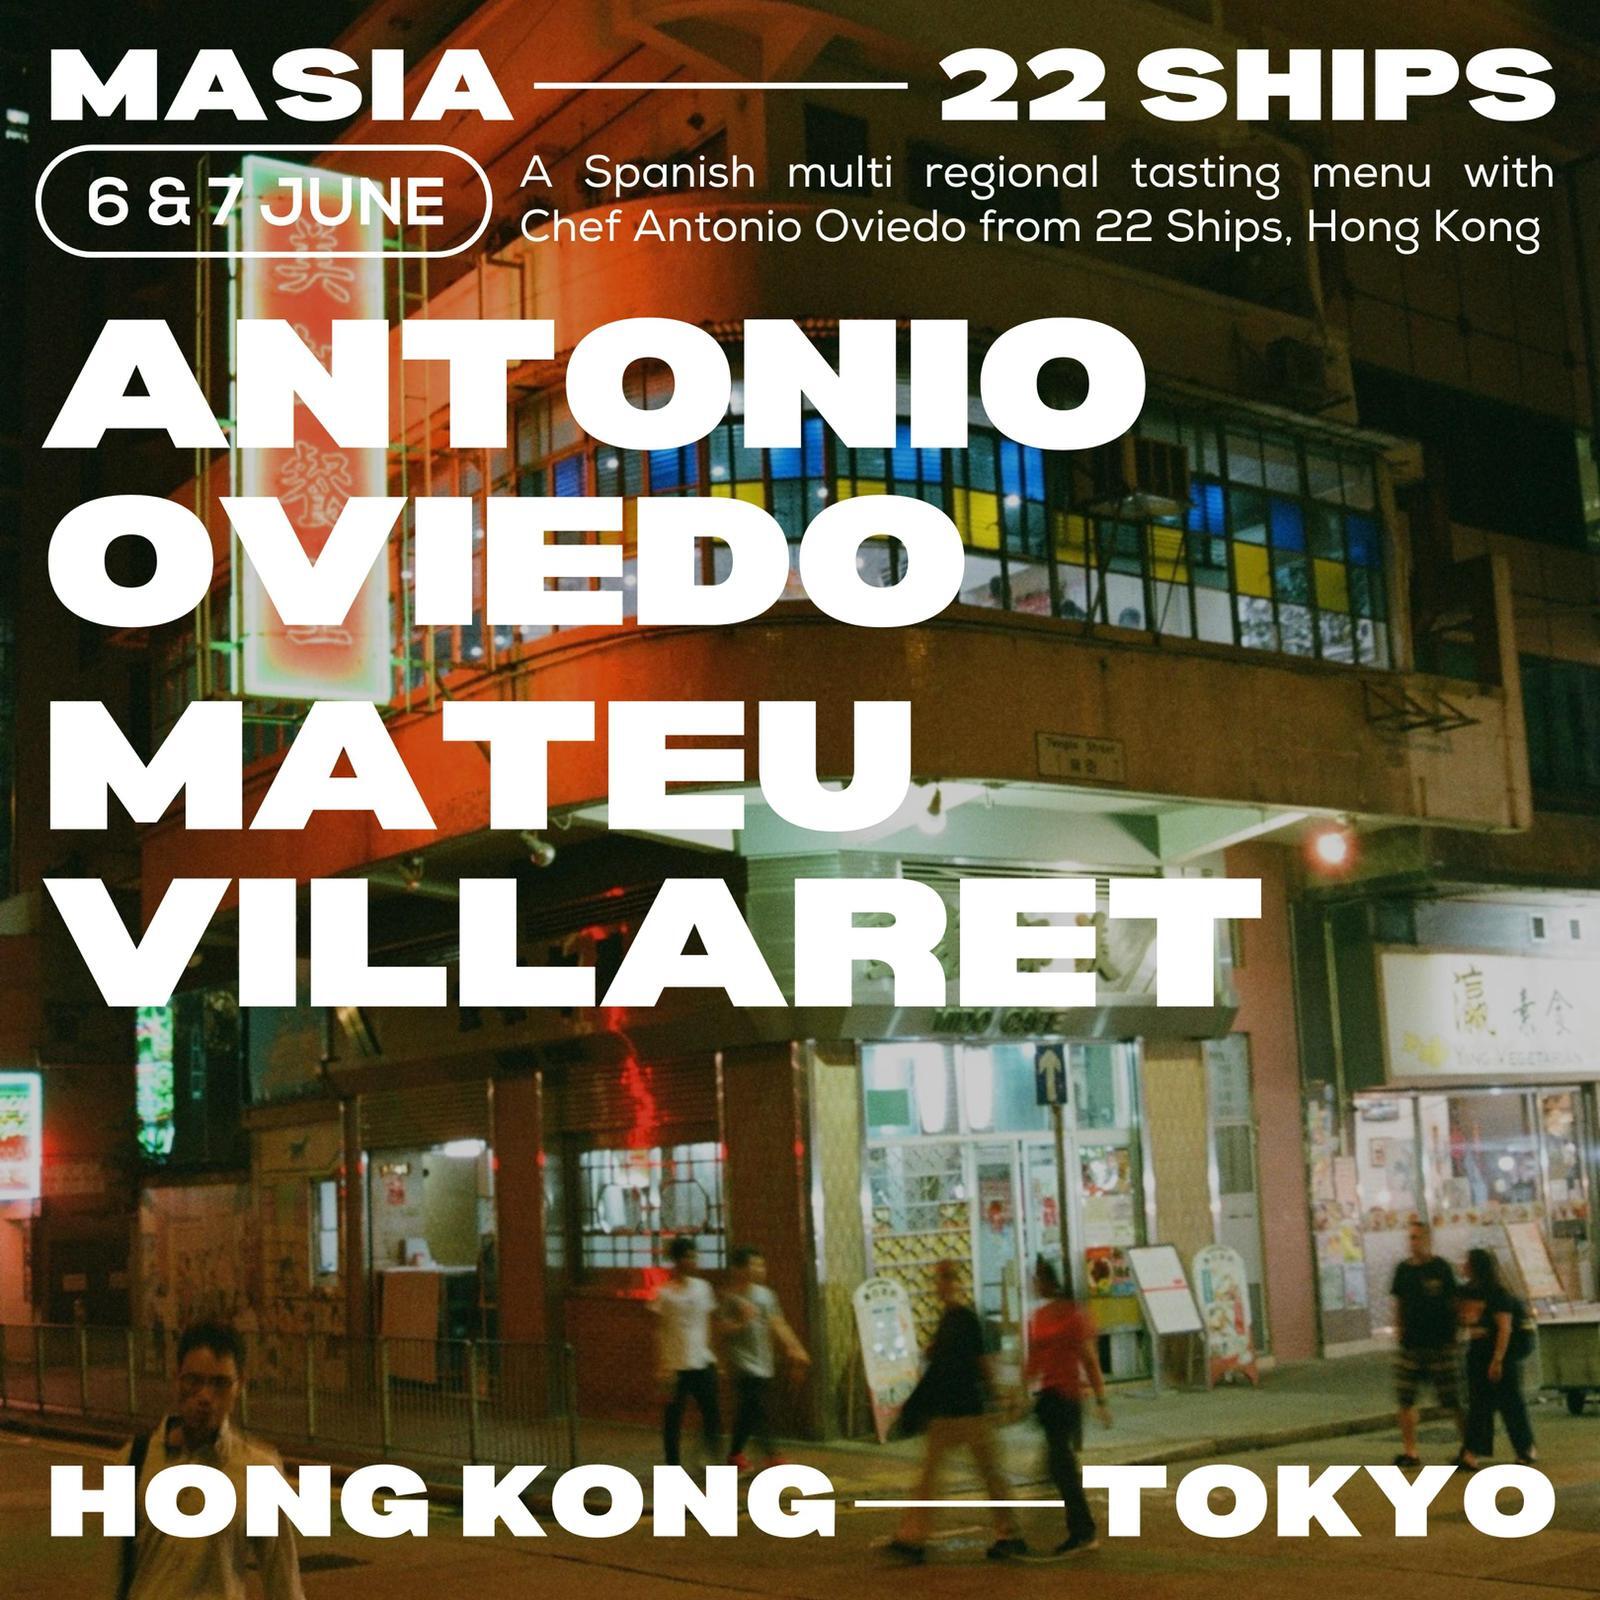 銀座のスペインレストラン“MASIA”と
香港のスパニッシュタパスバー“22Ships”による
2夜限定コラボディナーが6月6日(木)・7日(金)に開催